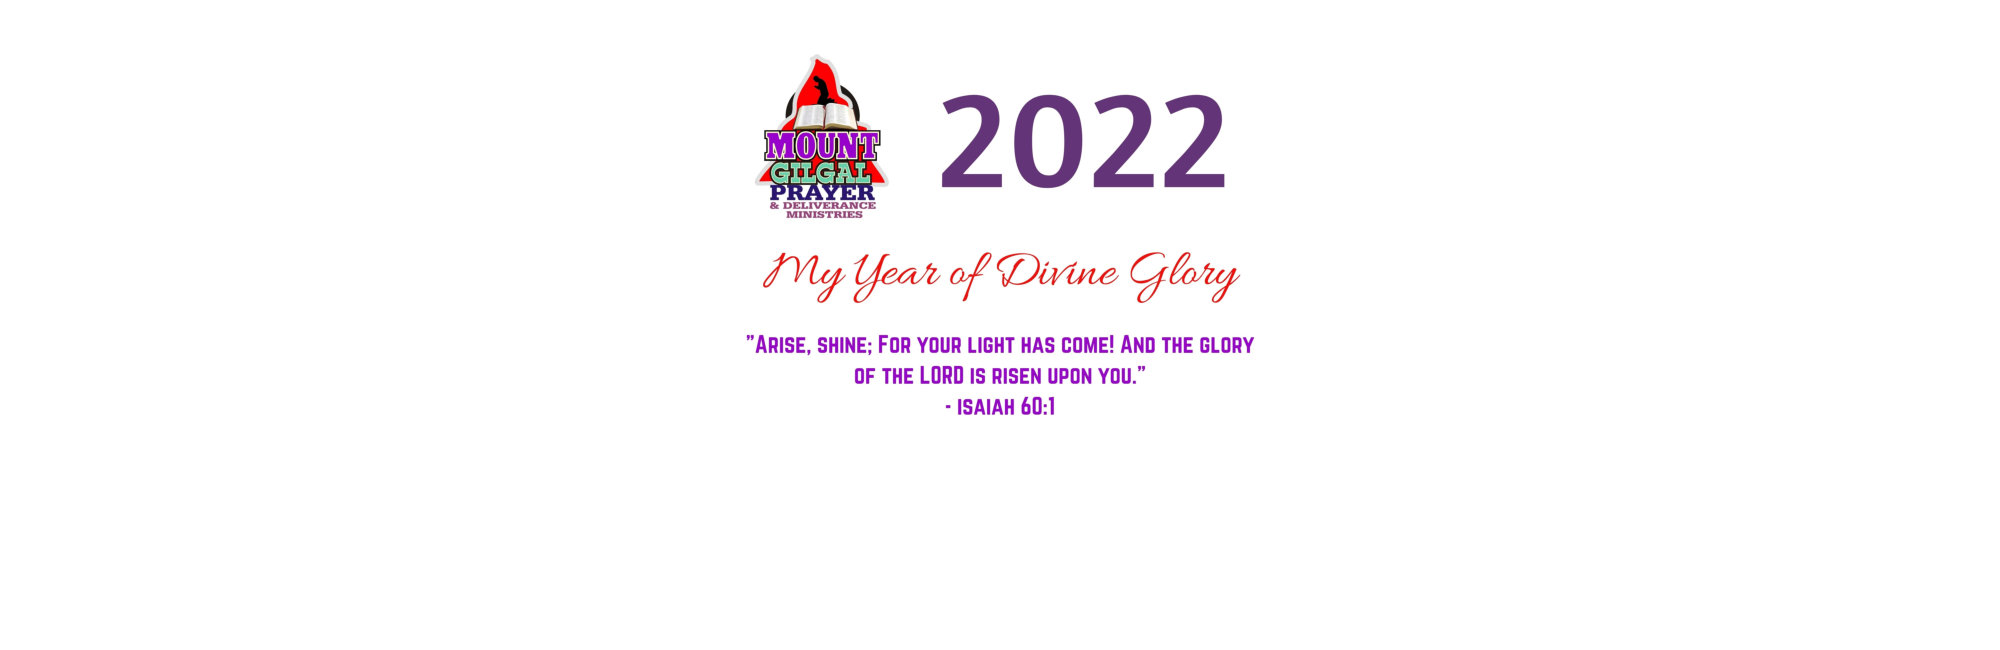 2022 theme